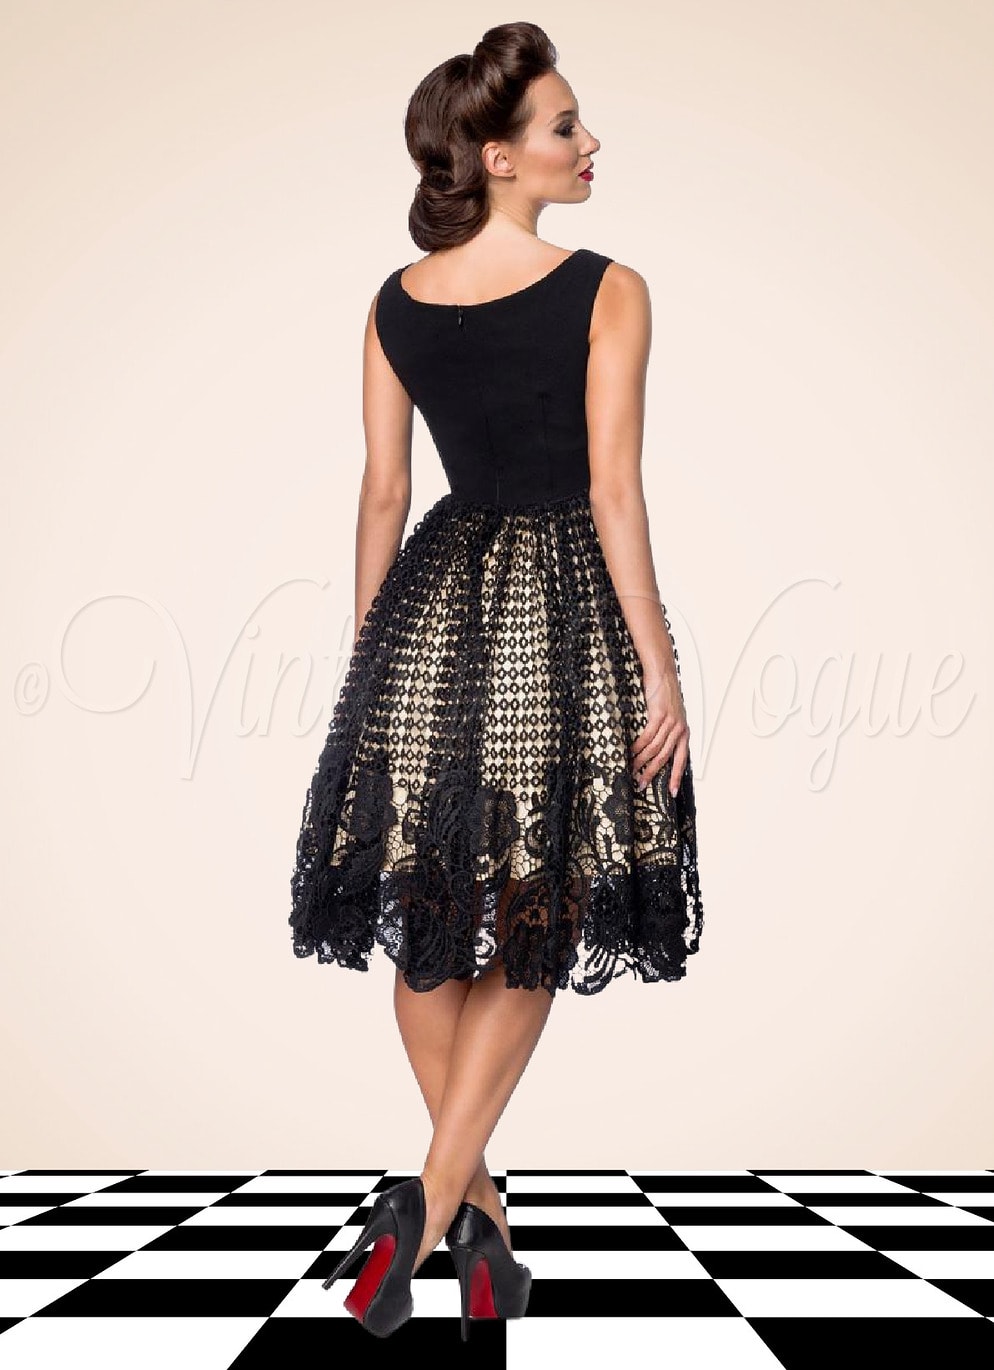 Belsira 50er Jahre Vintage Retro Swing Spitzen Kleid in Schwarz & Creme Petticoat Damen Damenkleid Spitzenkleid Winterkleid elegant Abendkleid festlich Gothic